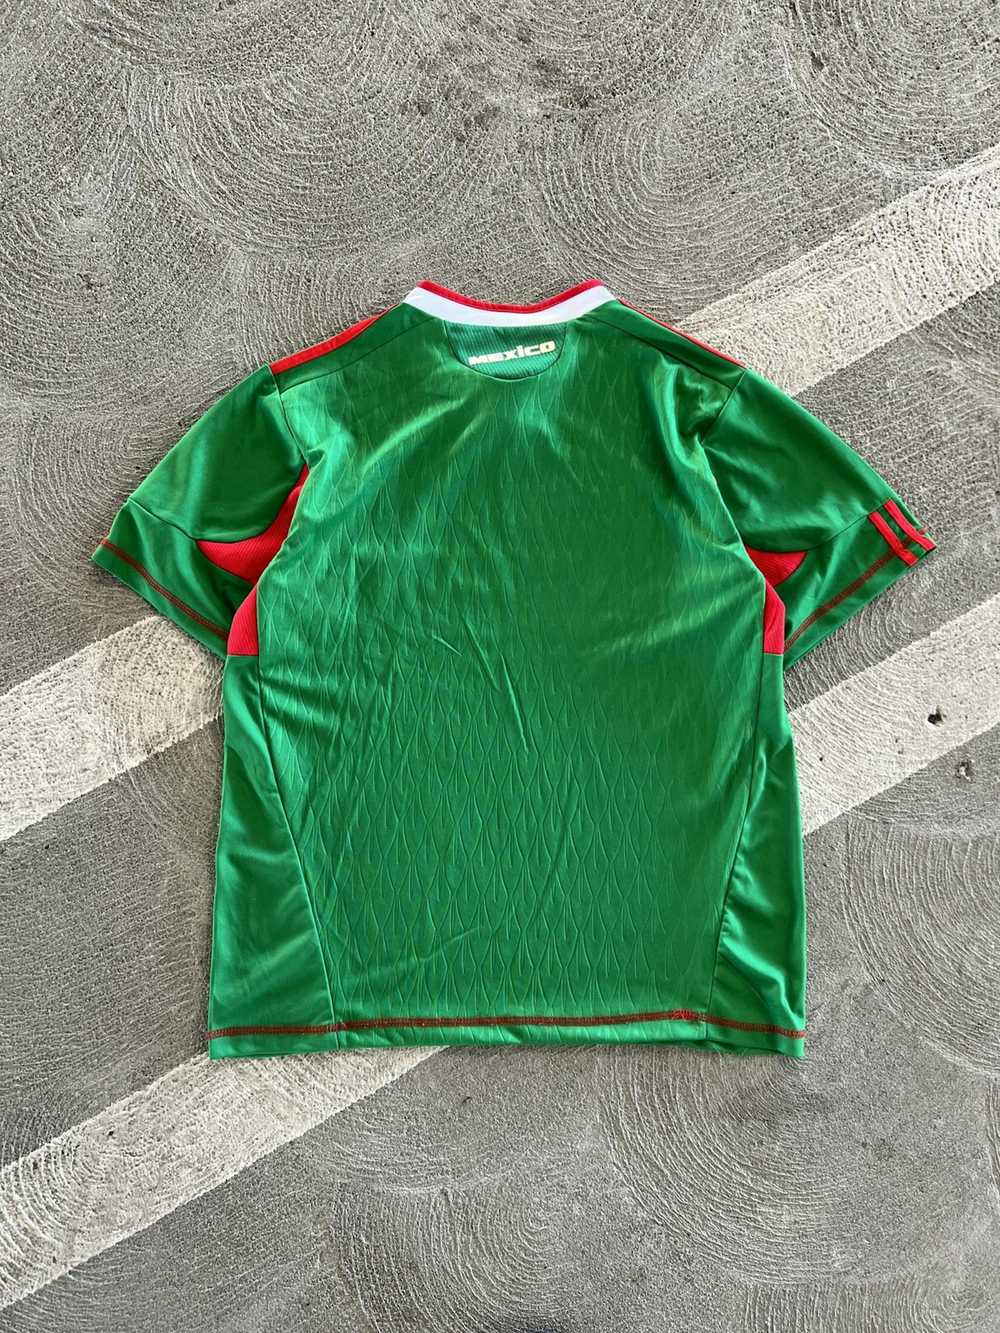 Soccer Jersey × Streetwear × Vintage Y2K Mexico S… - image 5